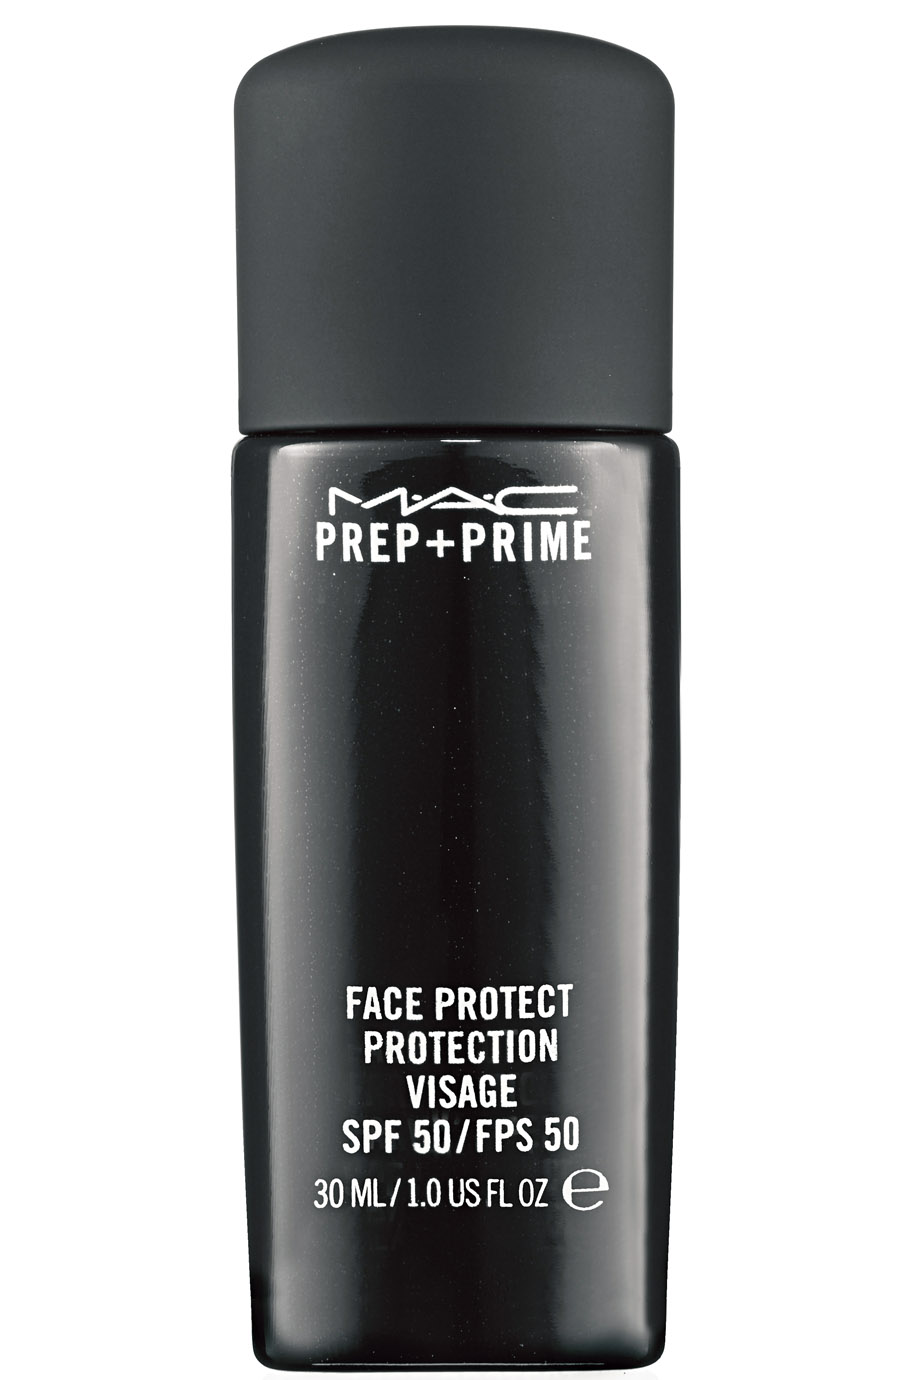 Caro Primer - O Prep + Prime Skin, da M.A.C, é muito bom, lá fora custa US$ 30, aqui sai por R$ 146